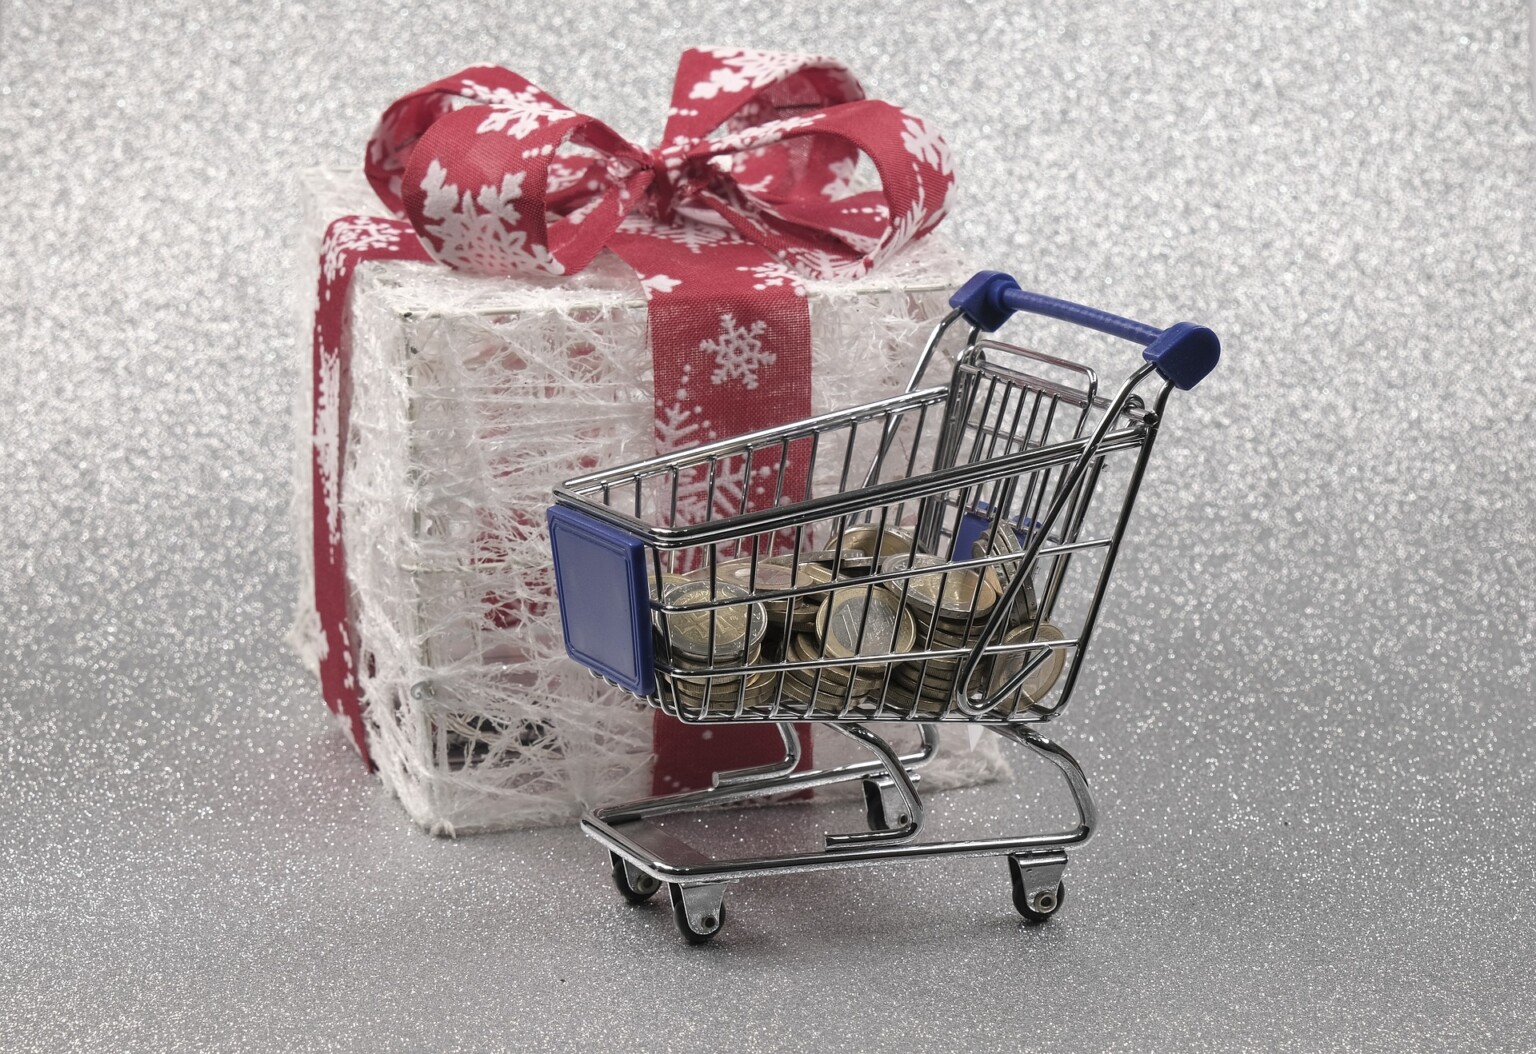 Kerst zorgt voor recordomzet supermarkten: 1,17 miljard euro in één week